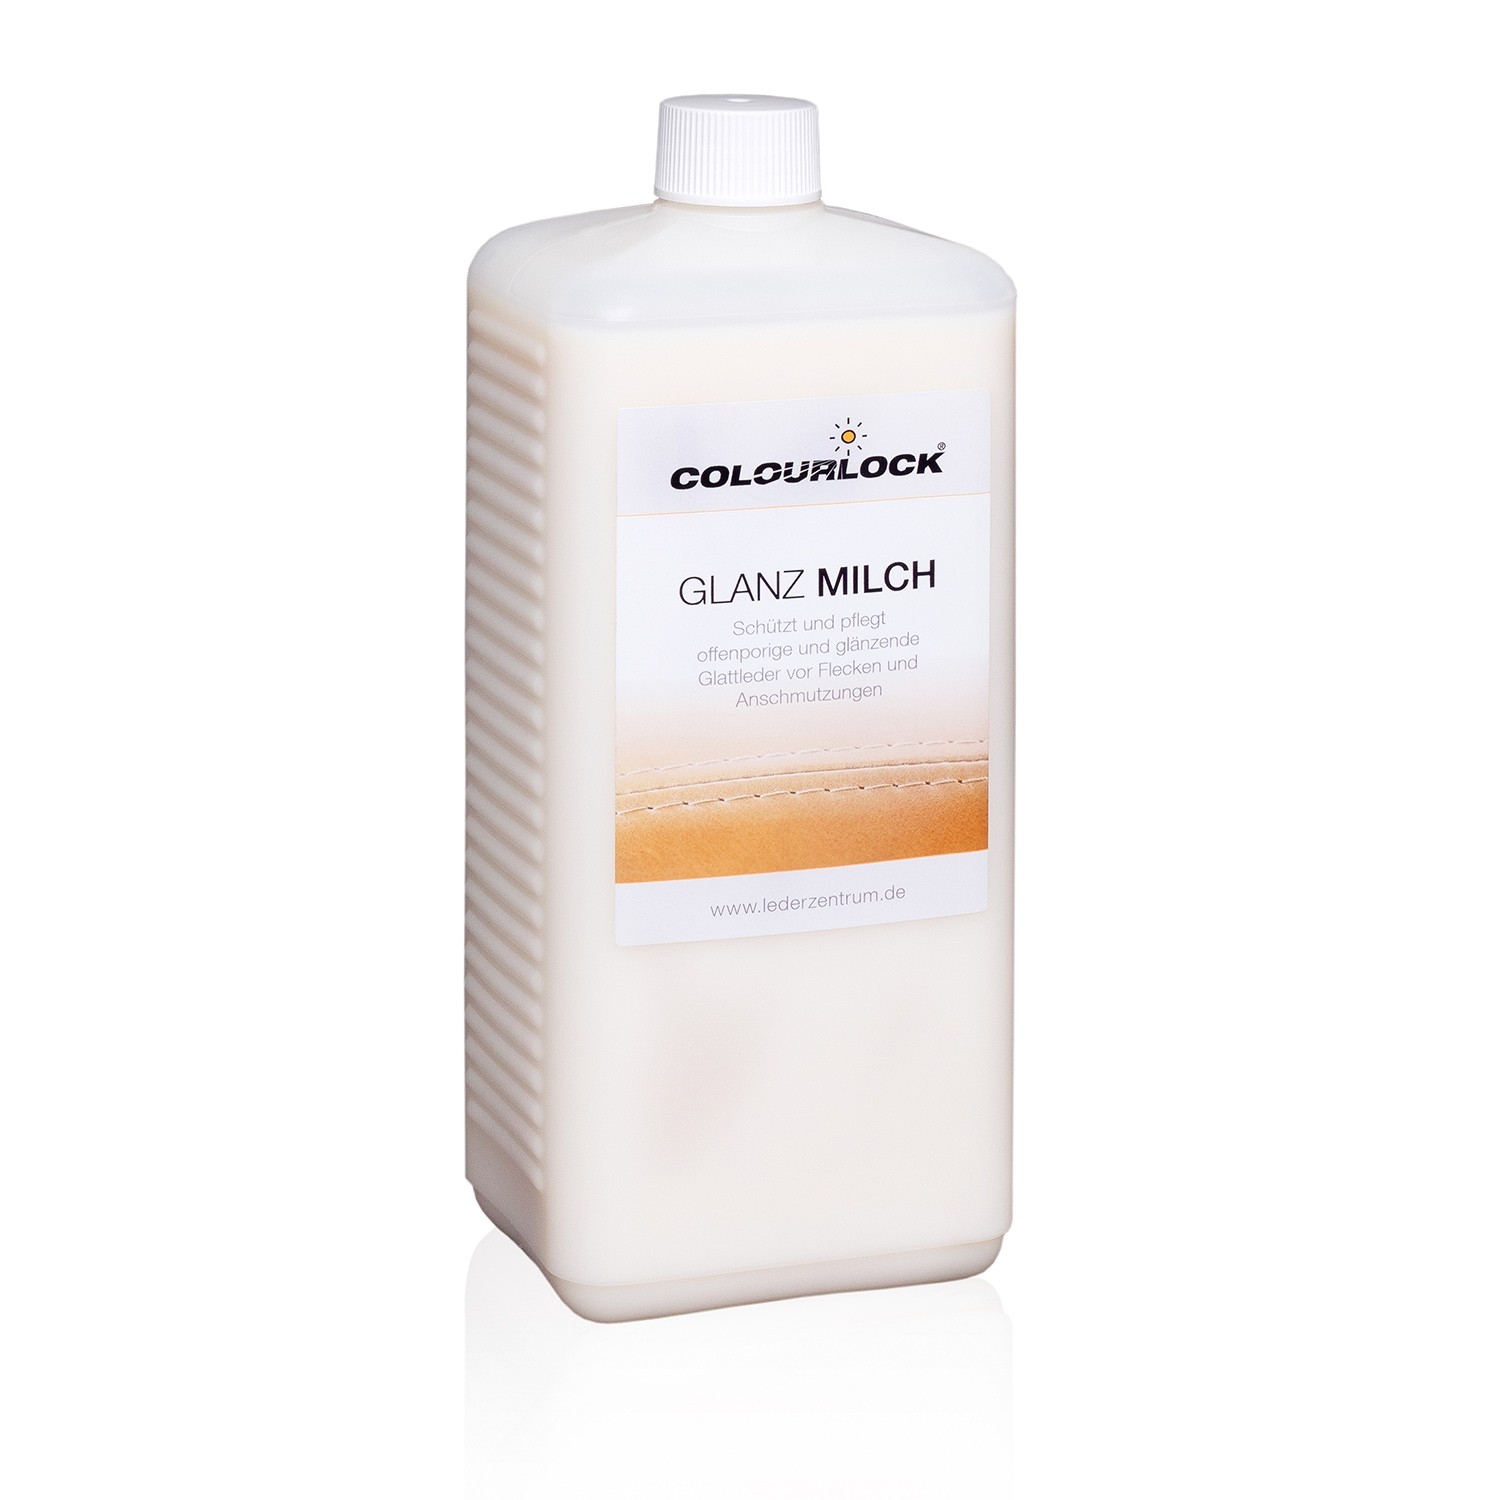 COLOURLOCK Glanz-Milch, 1 Liter